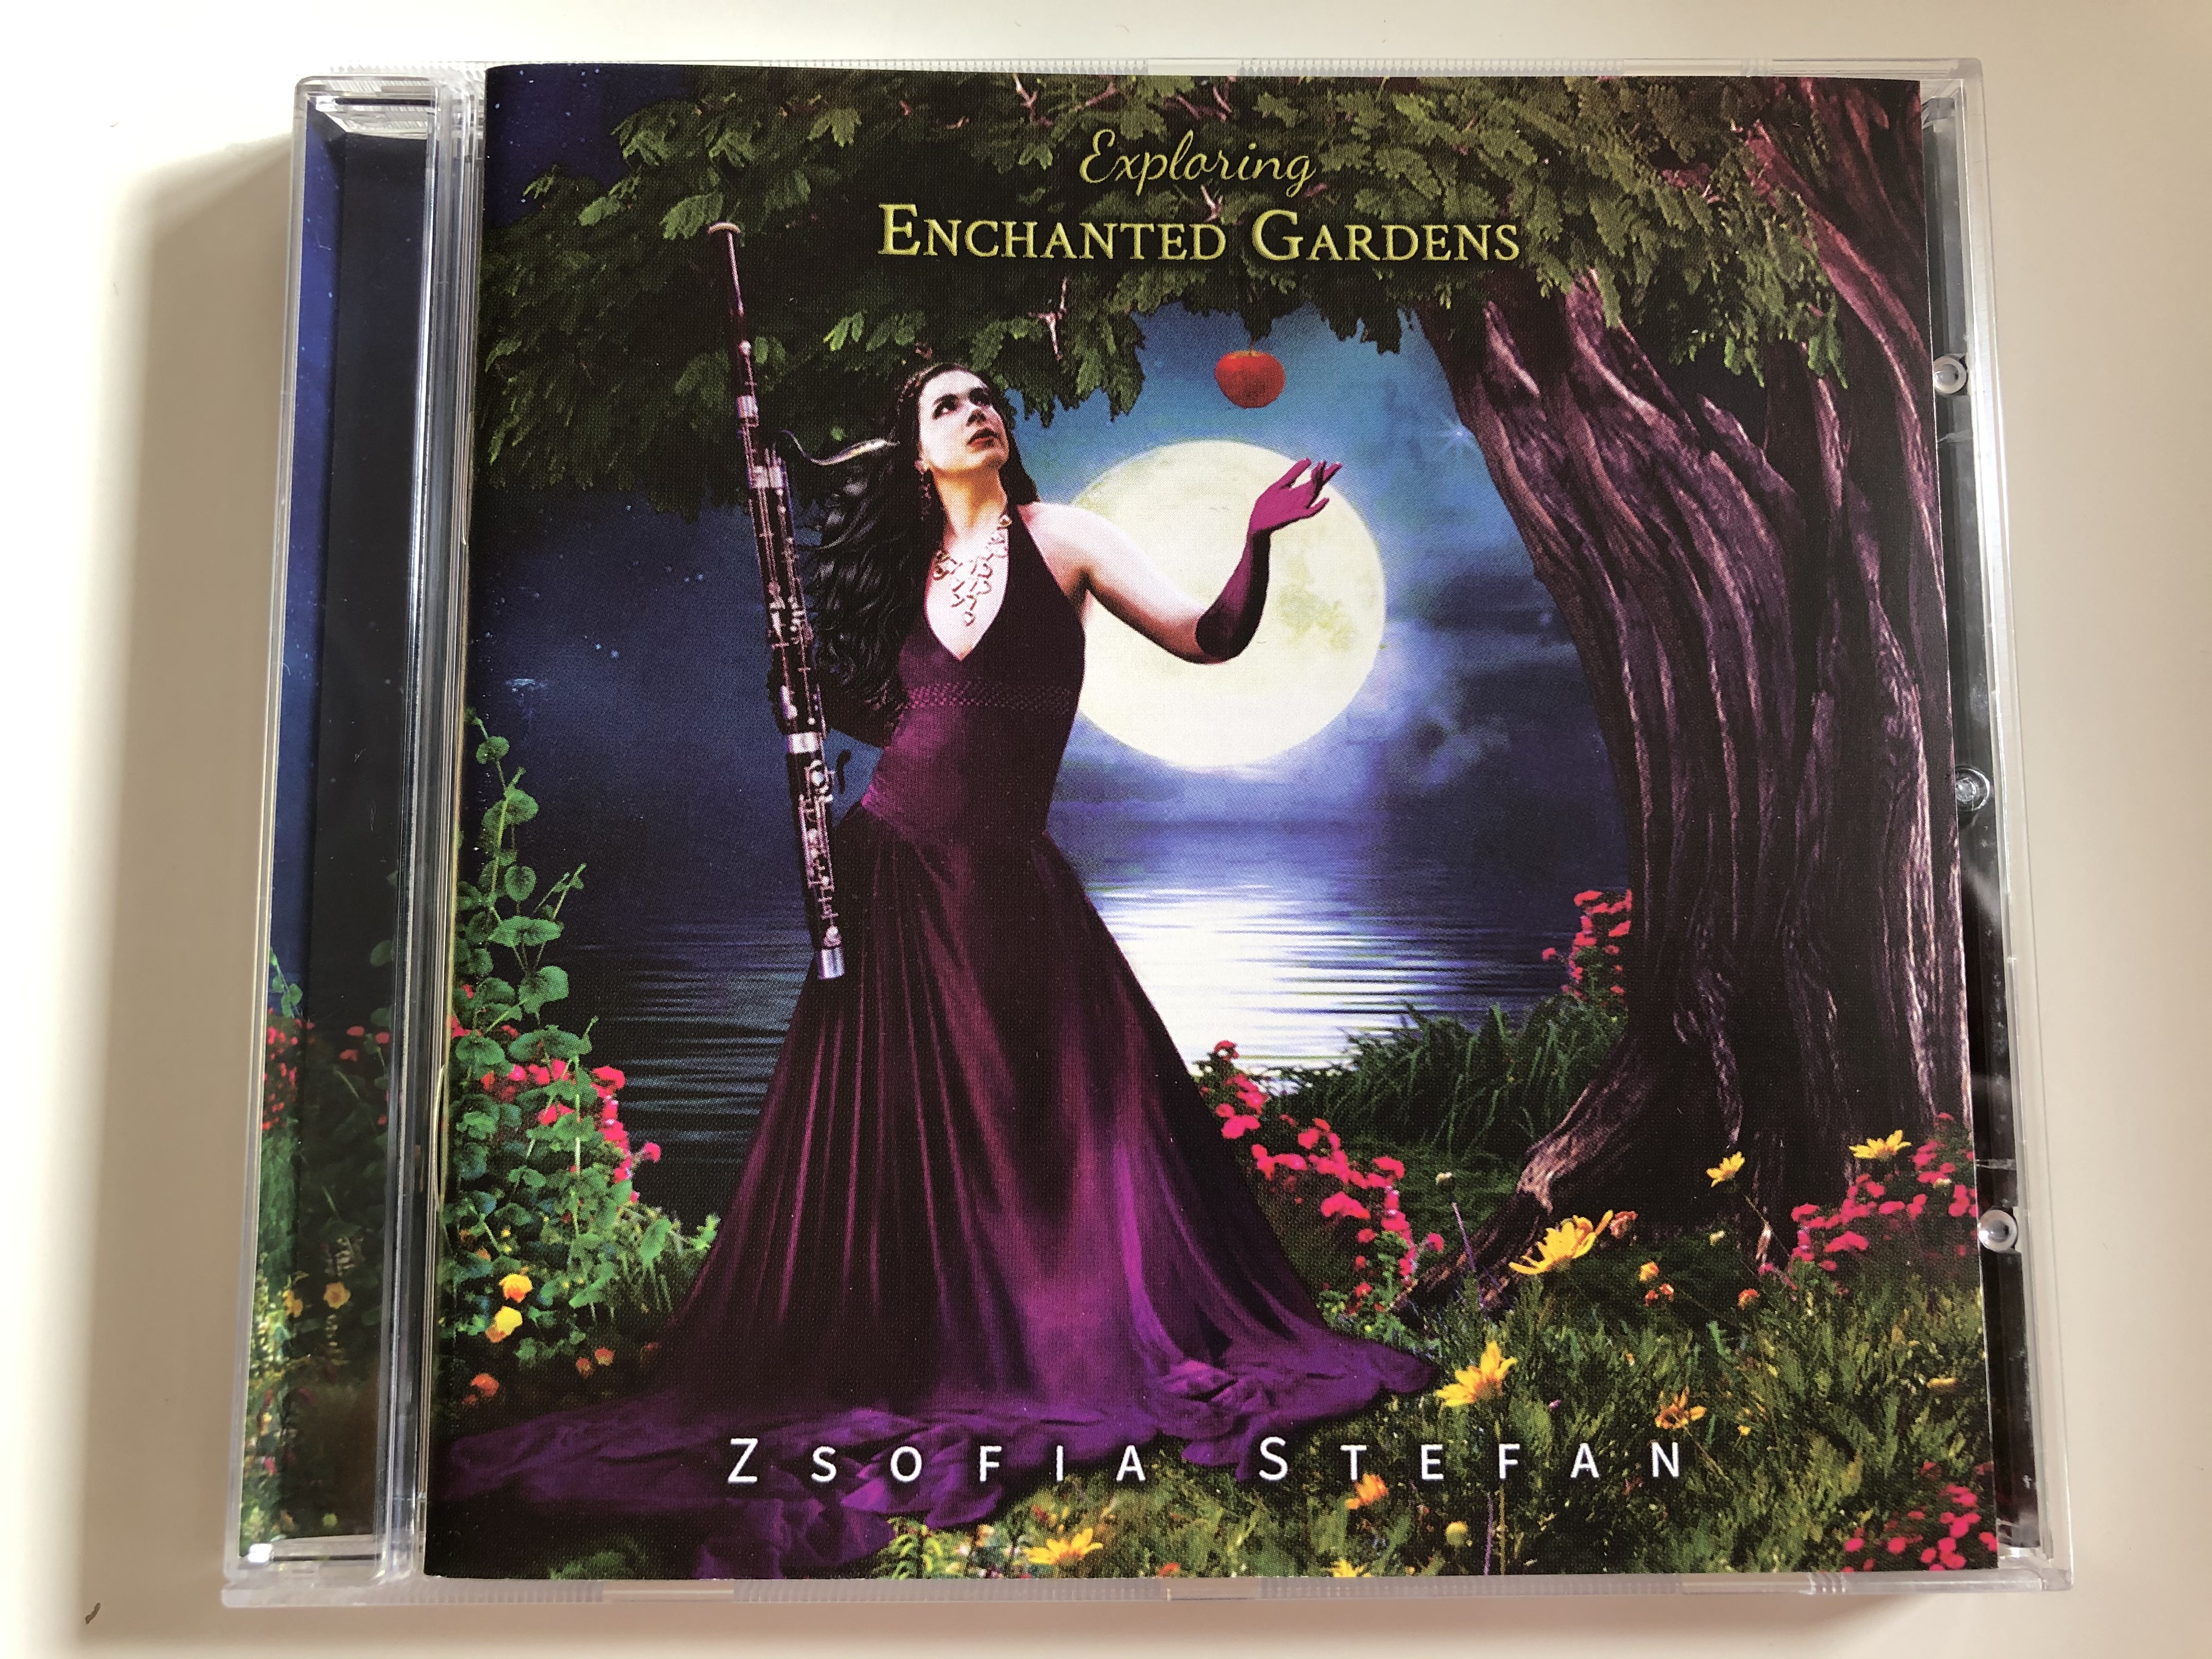 exploring-enchanted-gardens-zsofia-stefan-enthusiasmusic-audio-cd-2018-192650001848-1-.jpg